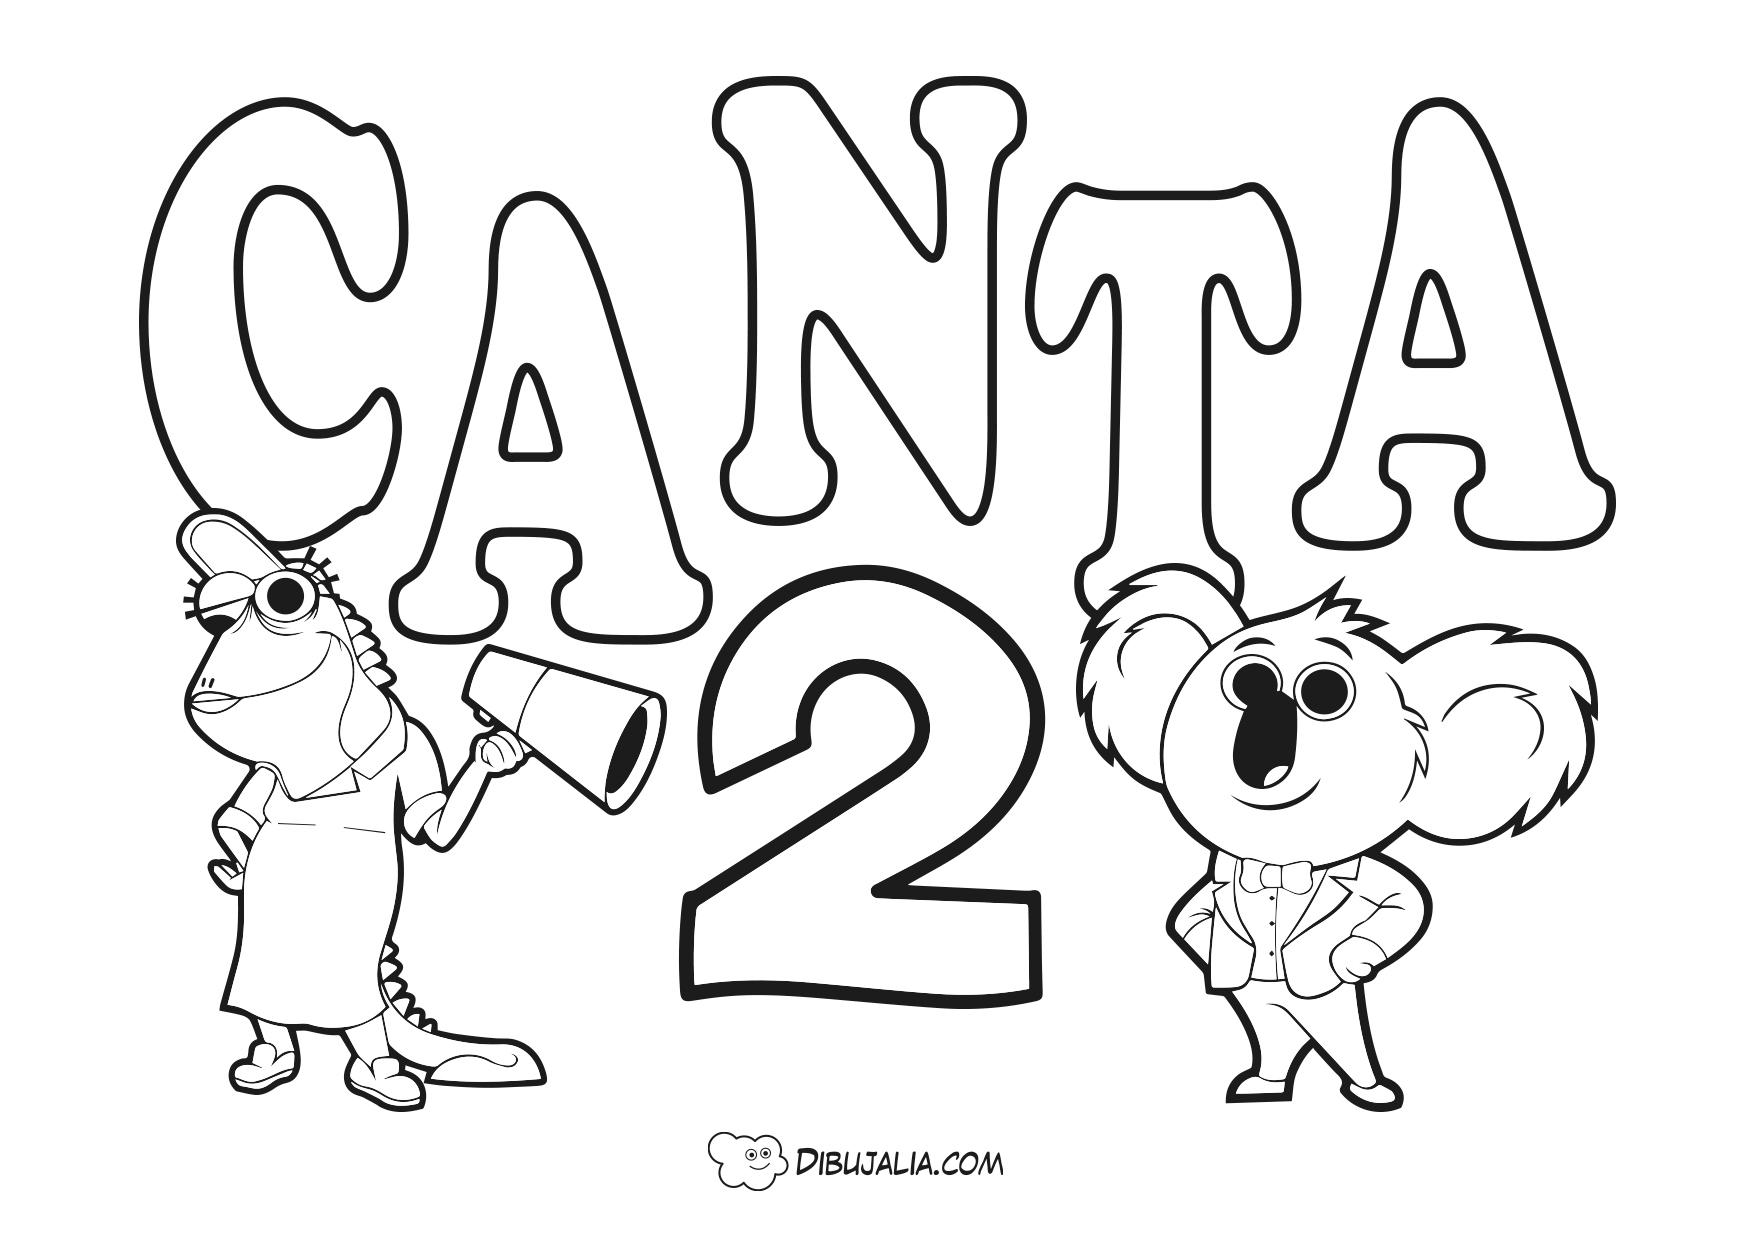 canta-2-portada - Dibujalia